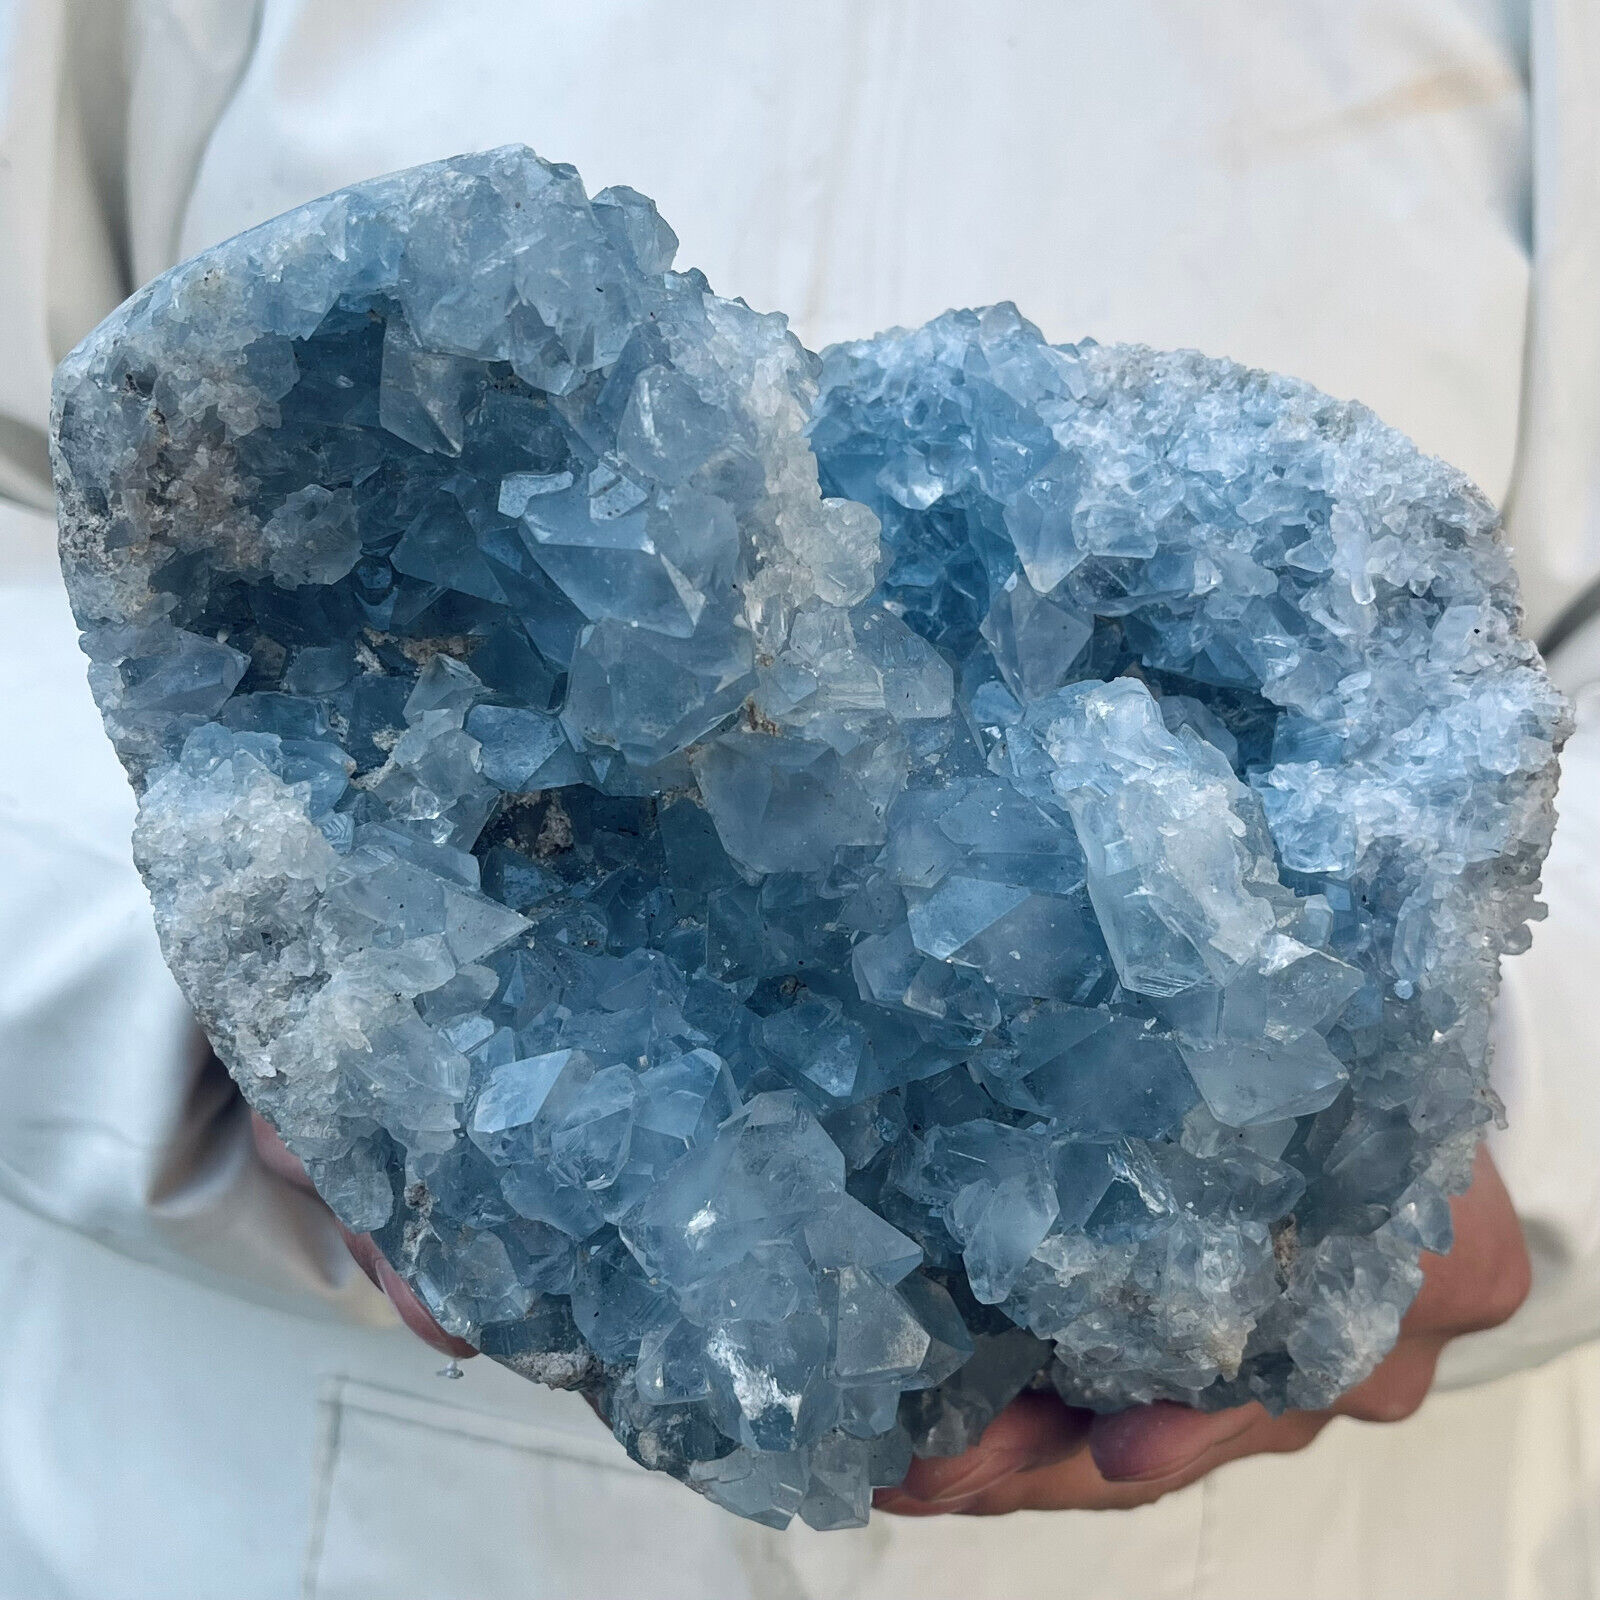 7.5lb Large Natural Blue Celestite Crystal Geode Quartz Cluster Mineral Specime